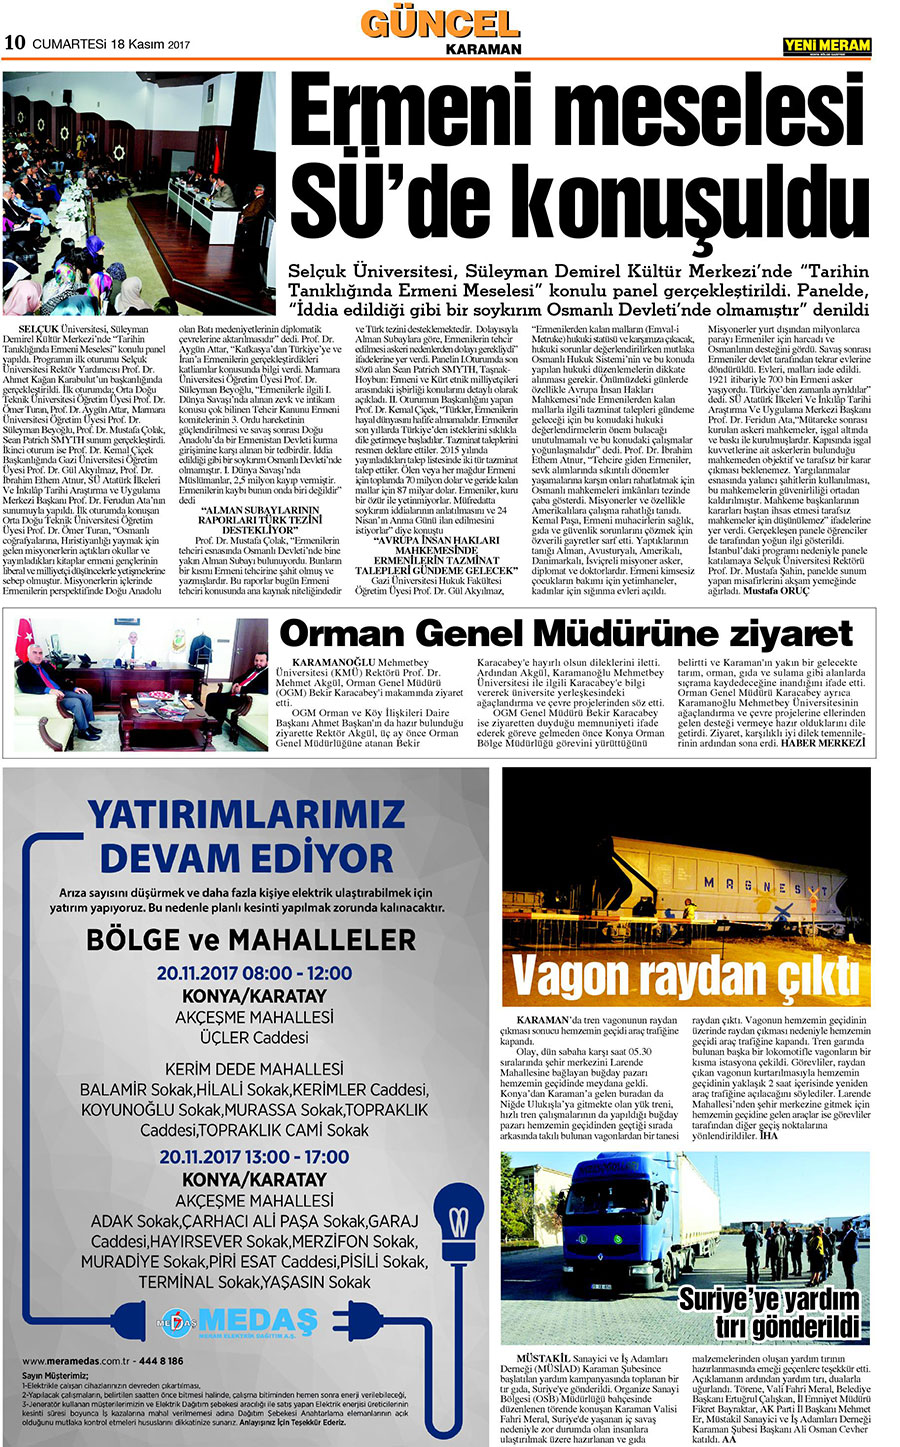 18 Kasım 2017 Yeni Meram Gazetesi